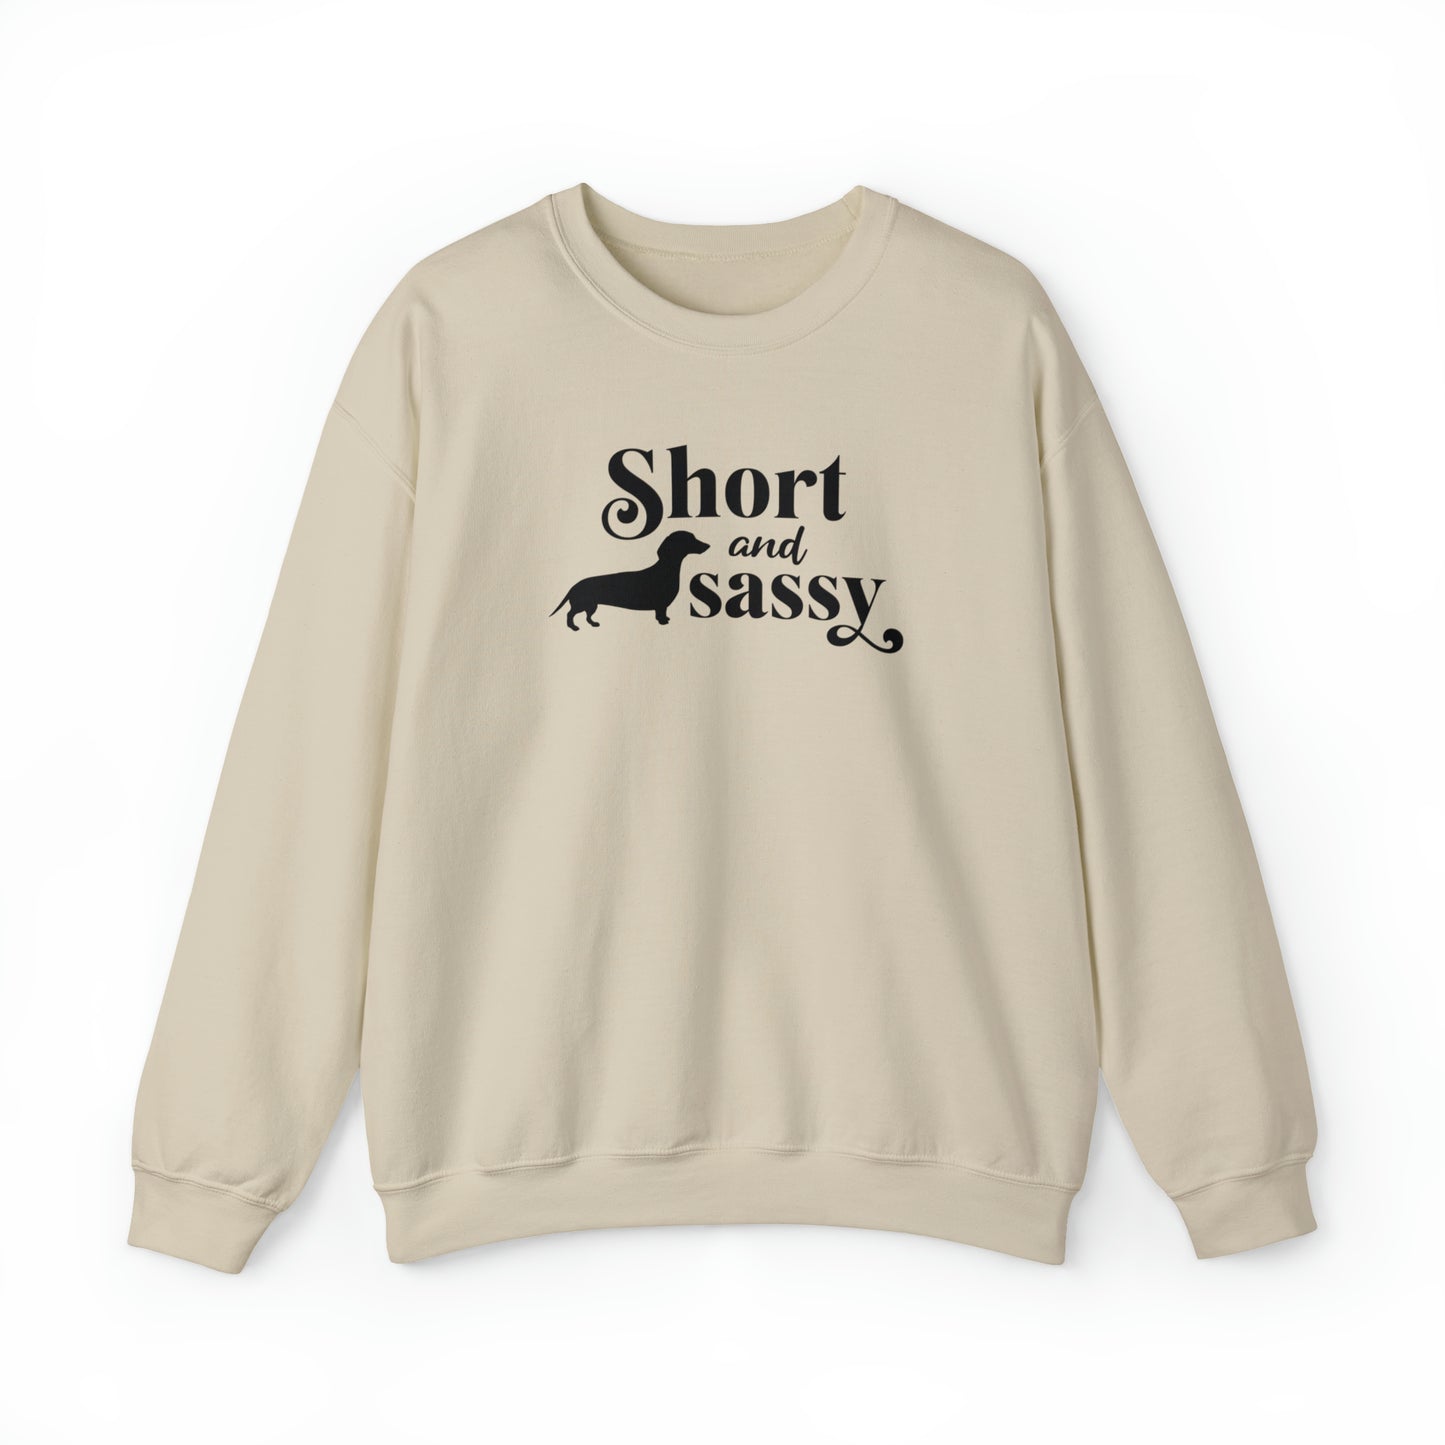 Dachshund Sweatshirt - Short And Sassy - Dachshund Gift